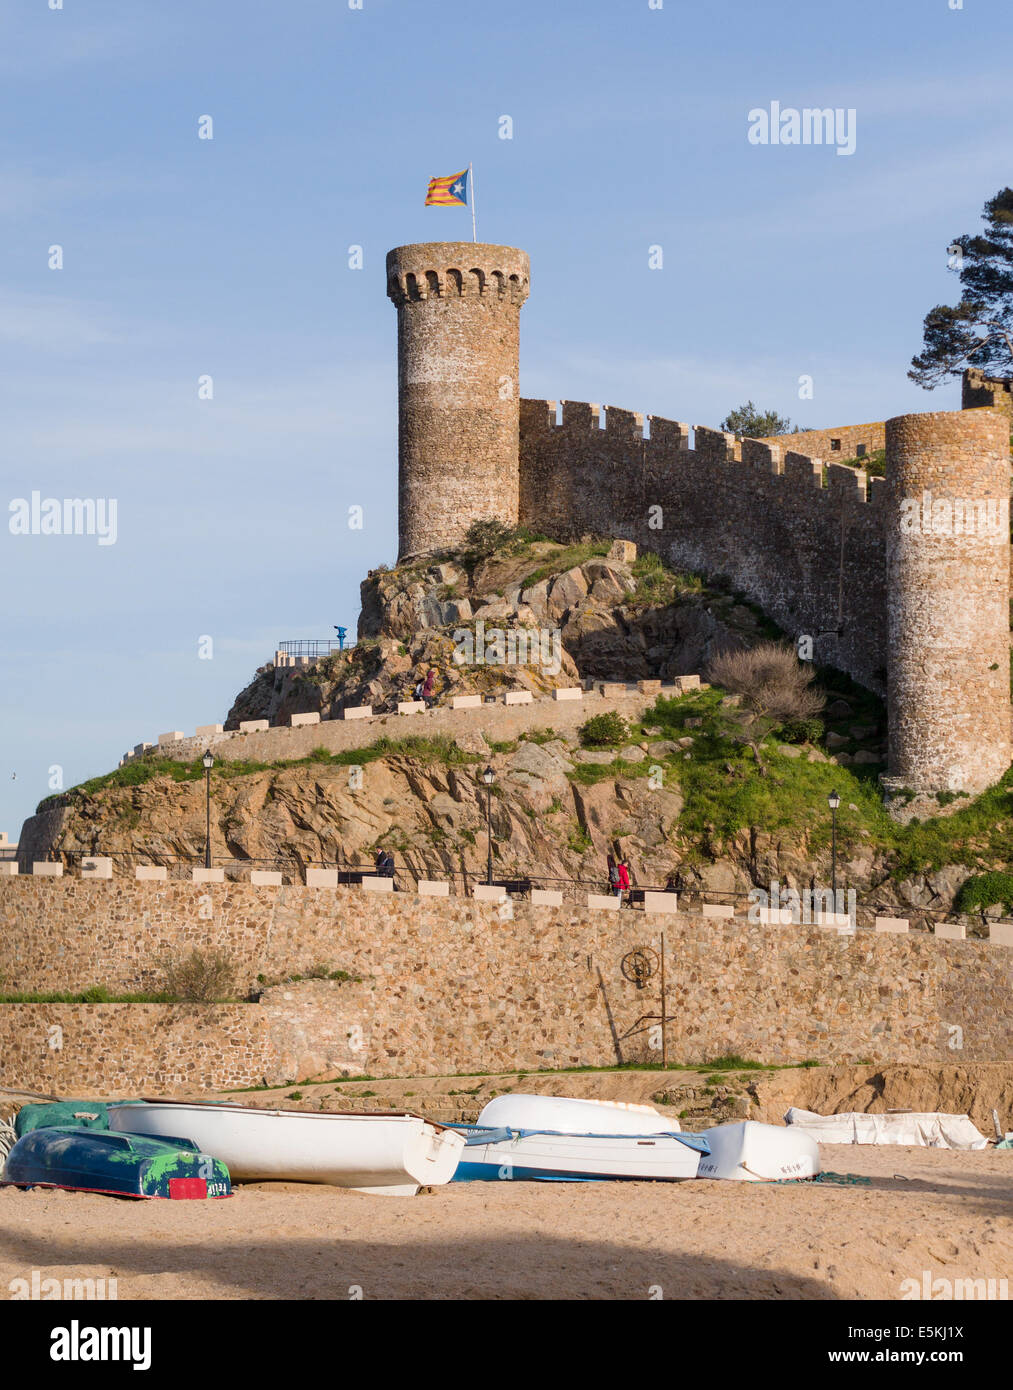 Forteresse de Tossa de Mar surmonté d'un drapeau catalan, bateaux ci-dessous. La muraille en pierre massive et tour de ce monument Banque D'Images